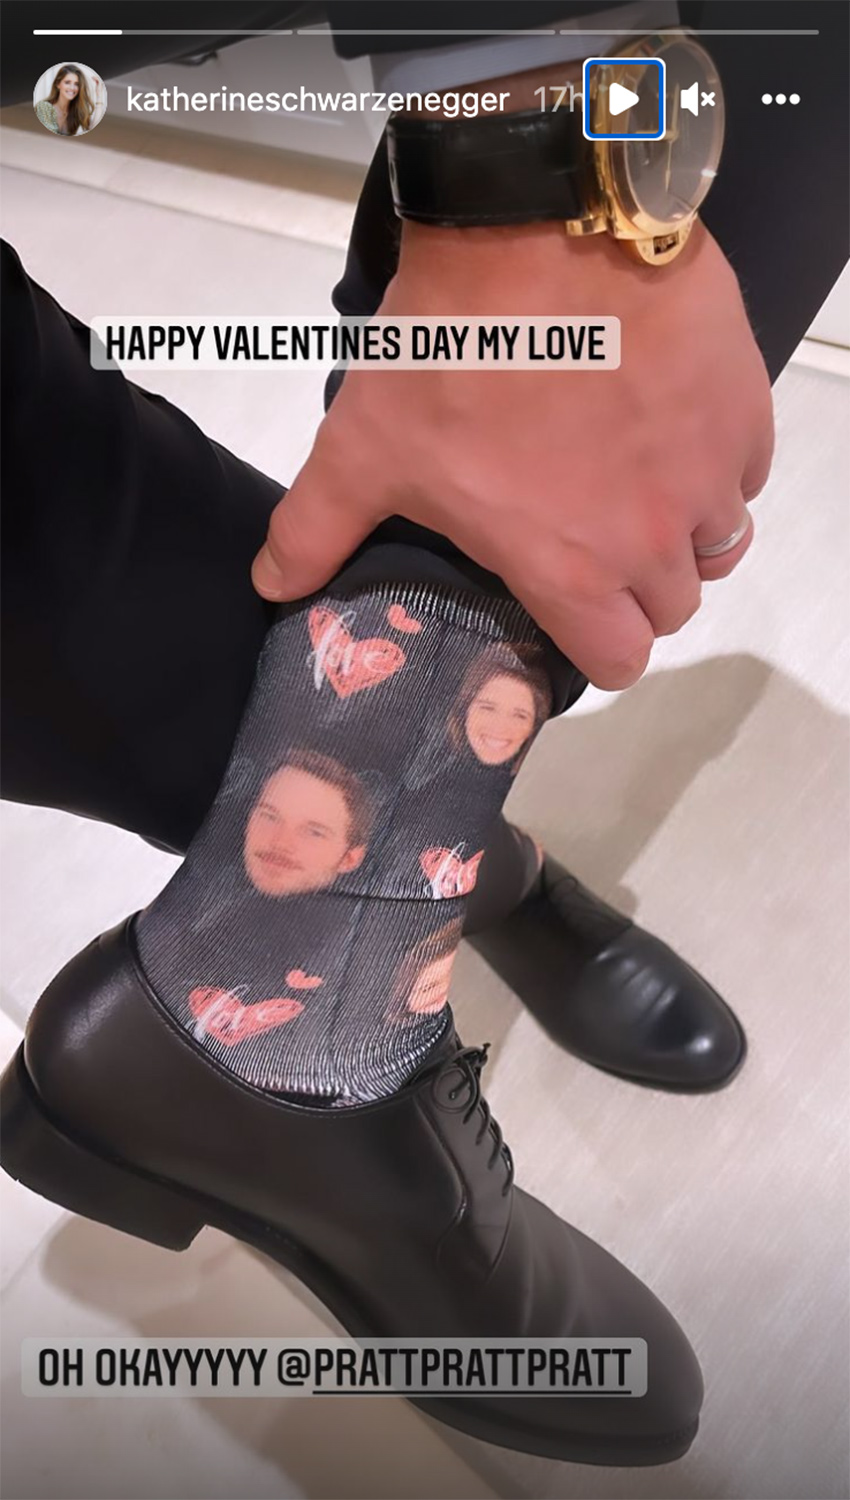 Chris Pratt Wears Socks with Katherine Schwarzenegger's Face on Them for Valentine's Day